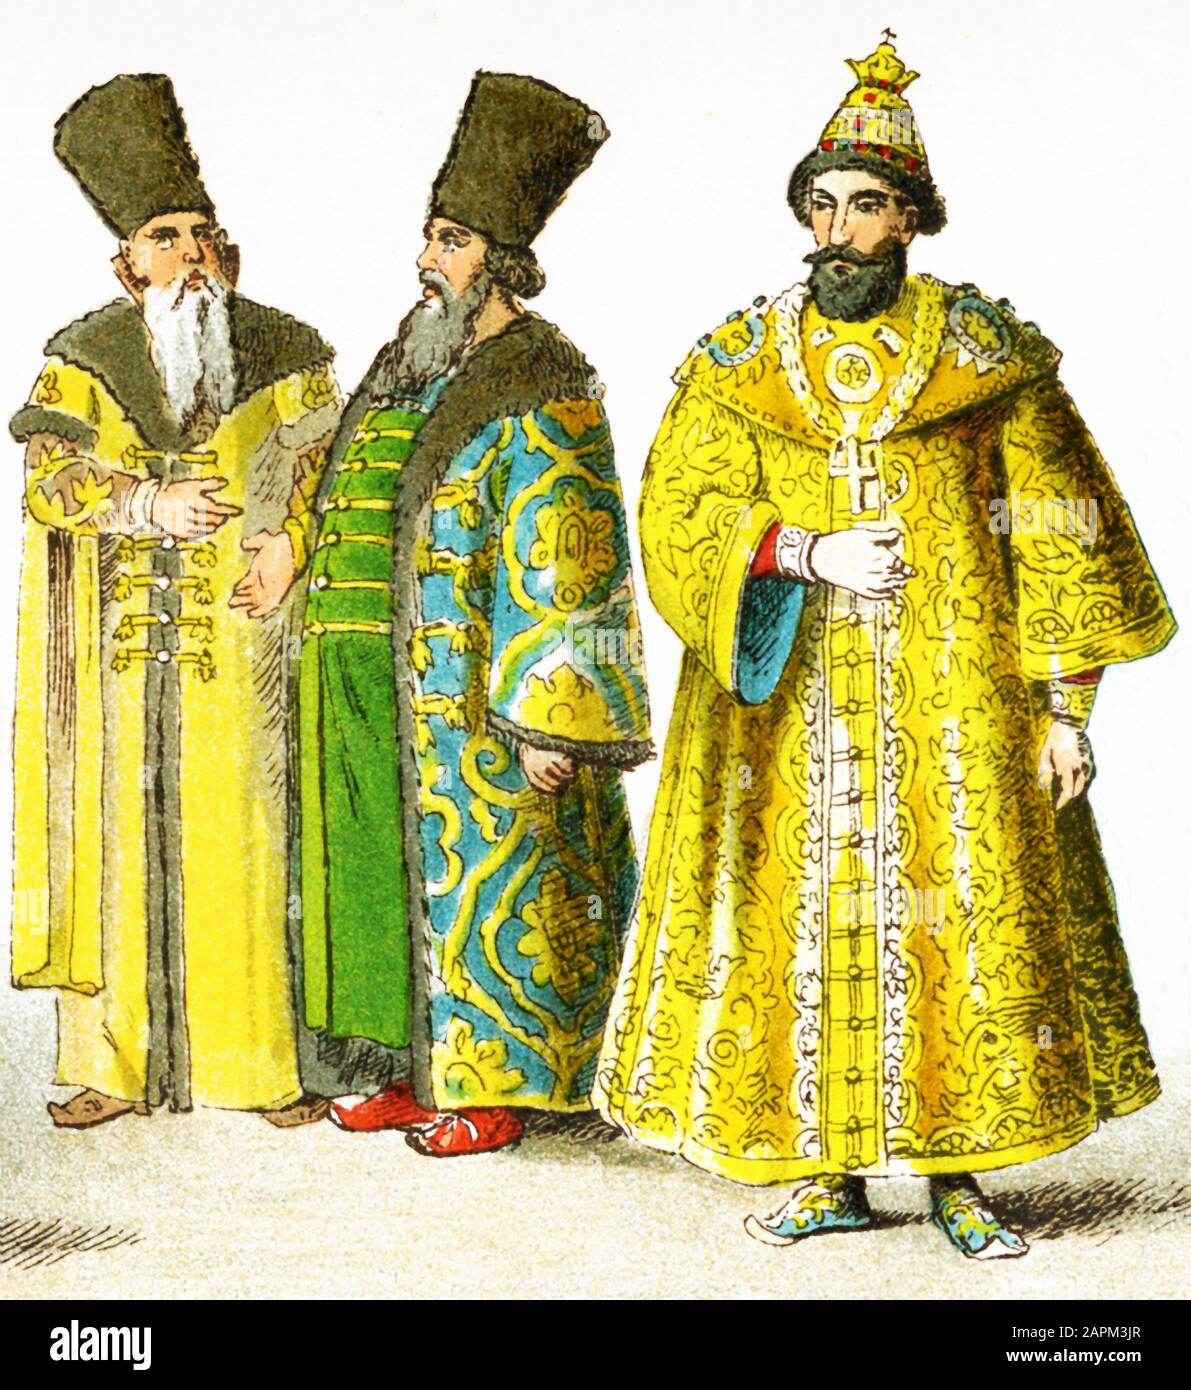 Le figure qui rappresentano il popolo slavo nel 1400 d.C. Sono, da sinistra a destra: Due nobili russi e uno zar russo. L'illustrazione risale al 1882. Foto Stock